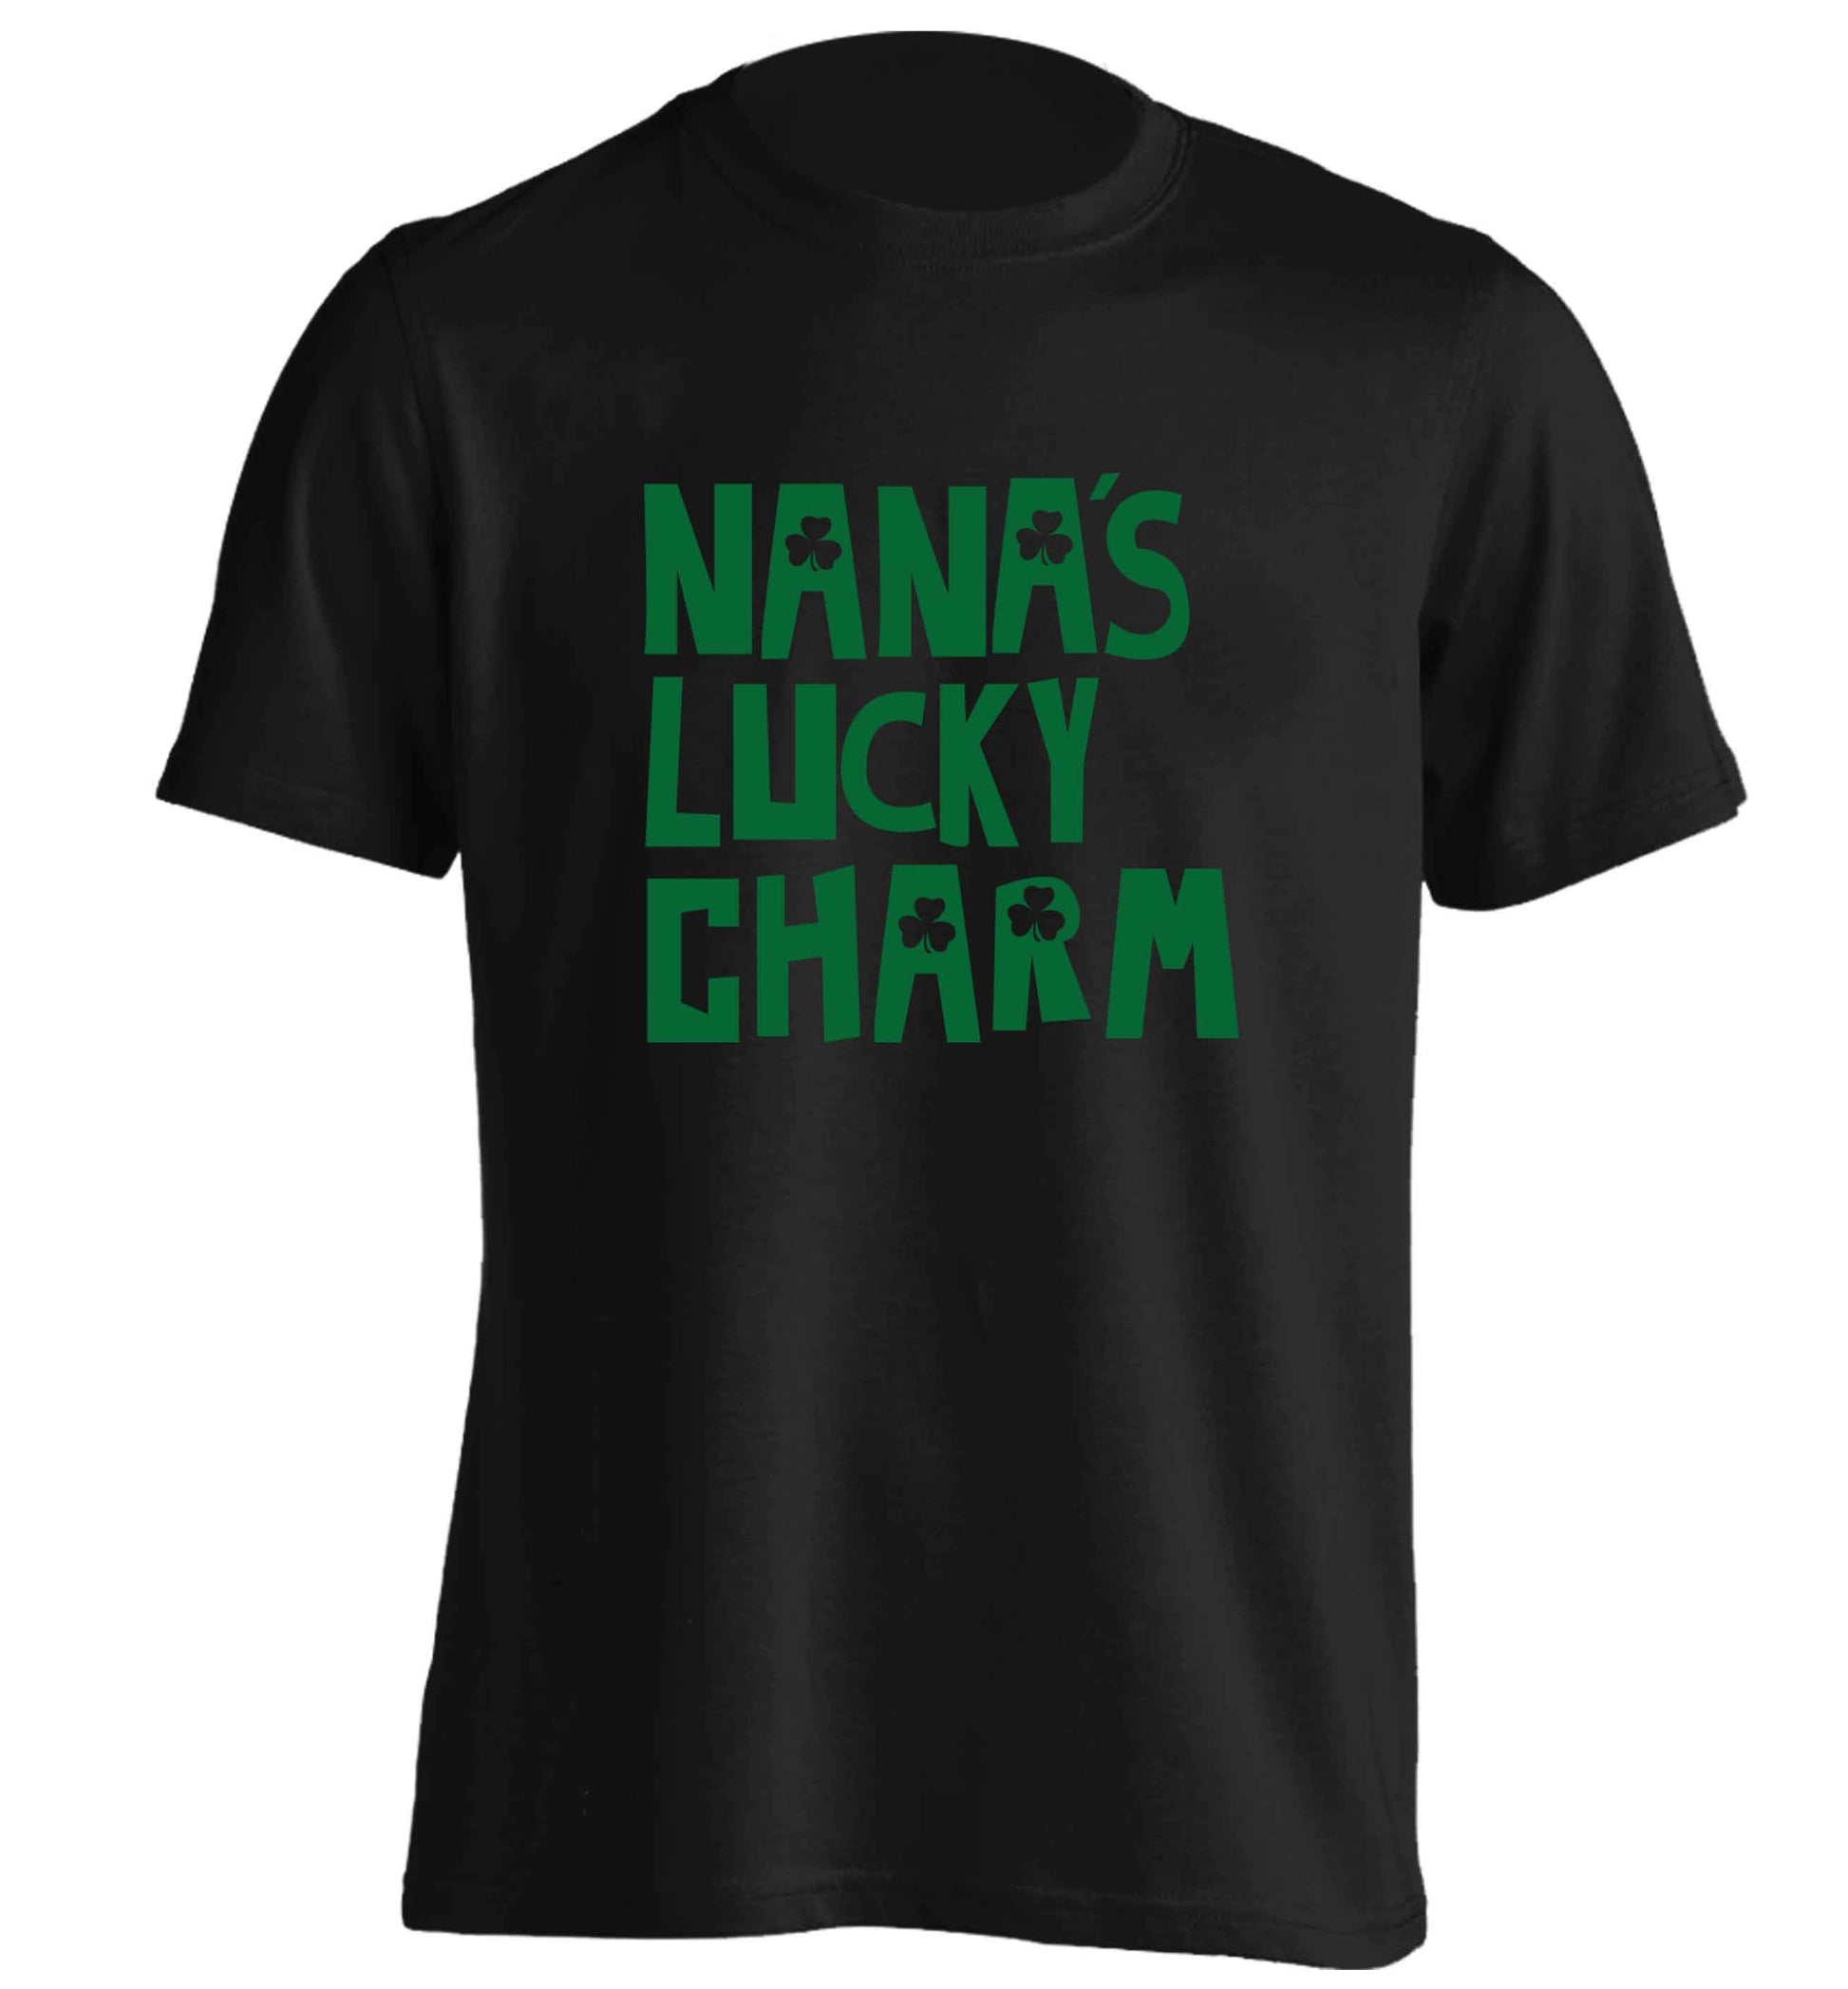 Nana's lucky charm adults unisex black Tshirt 2XL